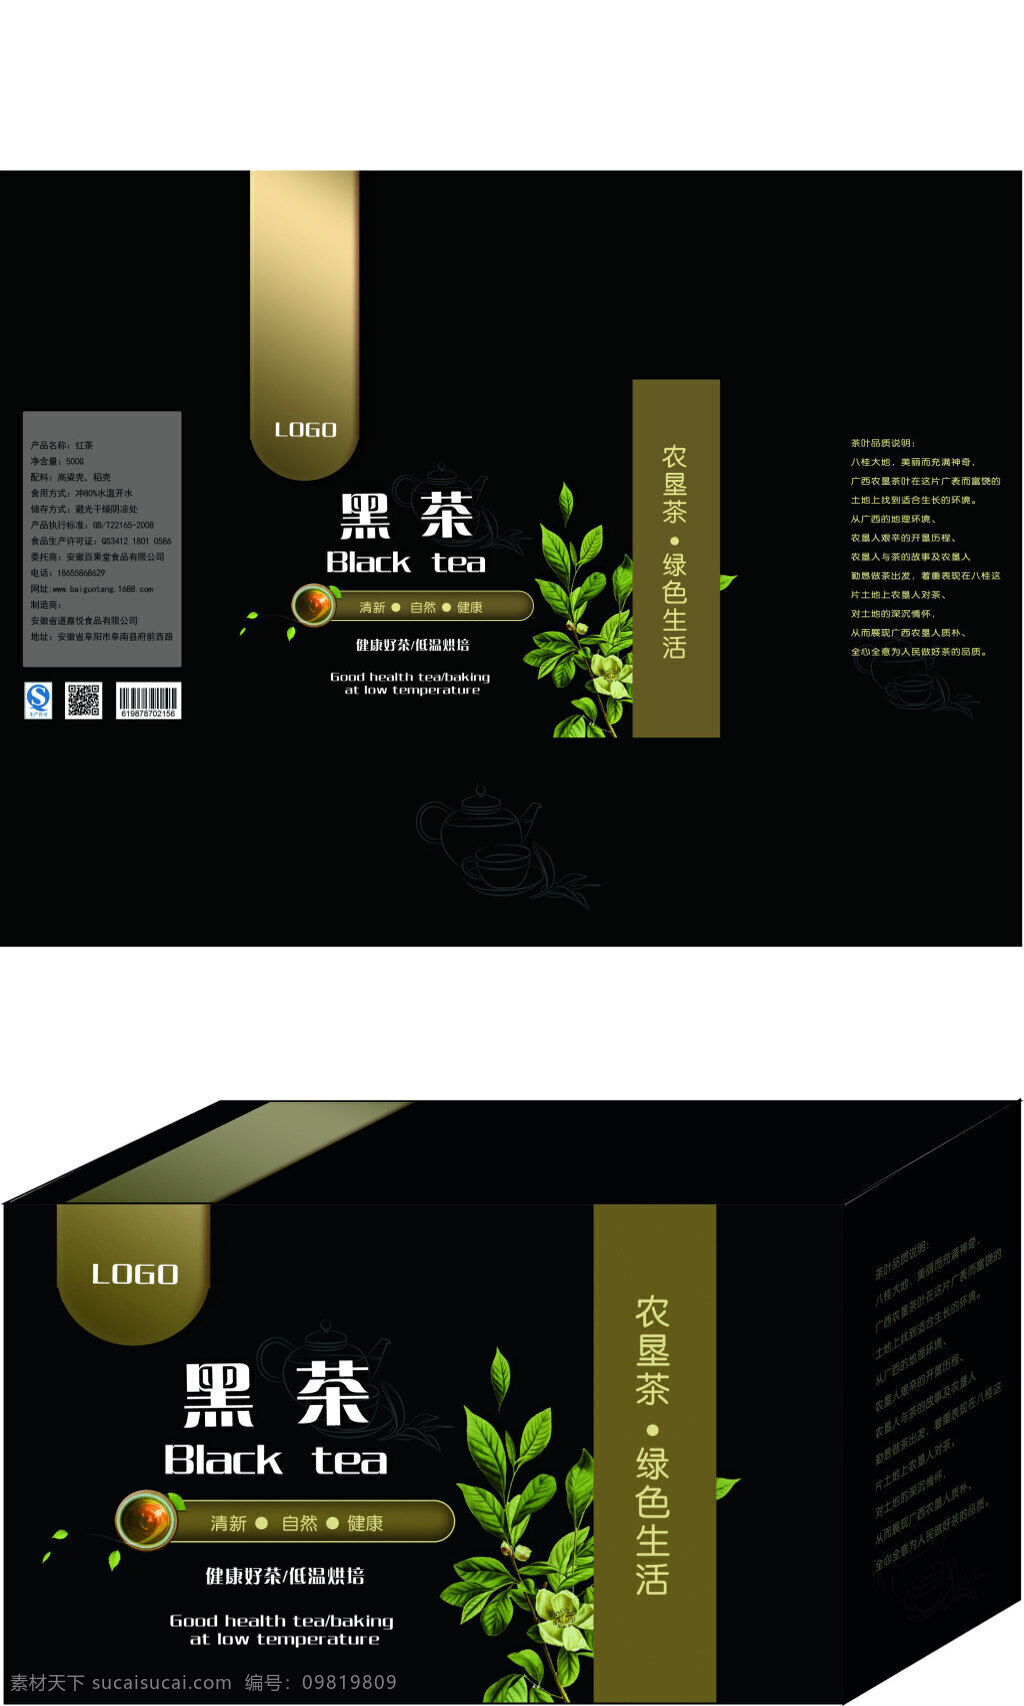 黑茶 包装设计 简约 茶叶 包装 黑色盒子包装 礼盒包装 基样包装 展示图包装 平面 黑茶包装